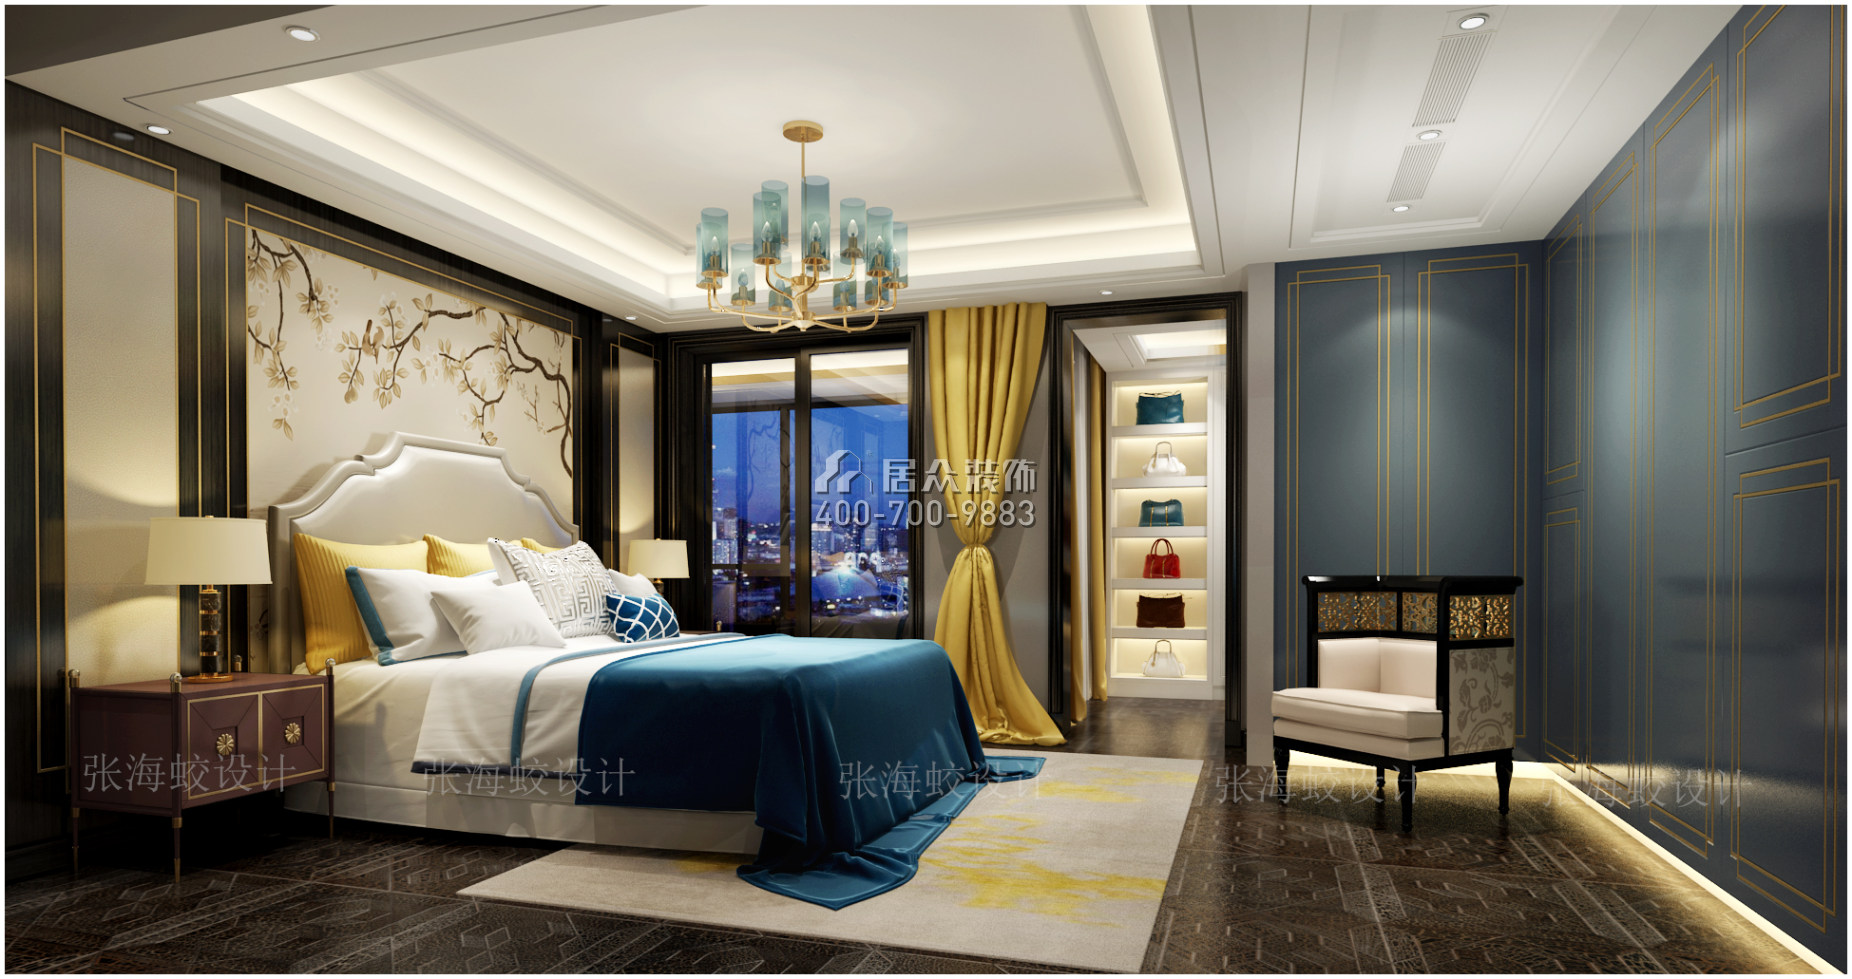 湘江一号210平方米混搭风格平层户型卧室装修效果图